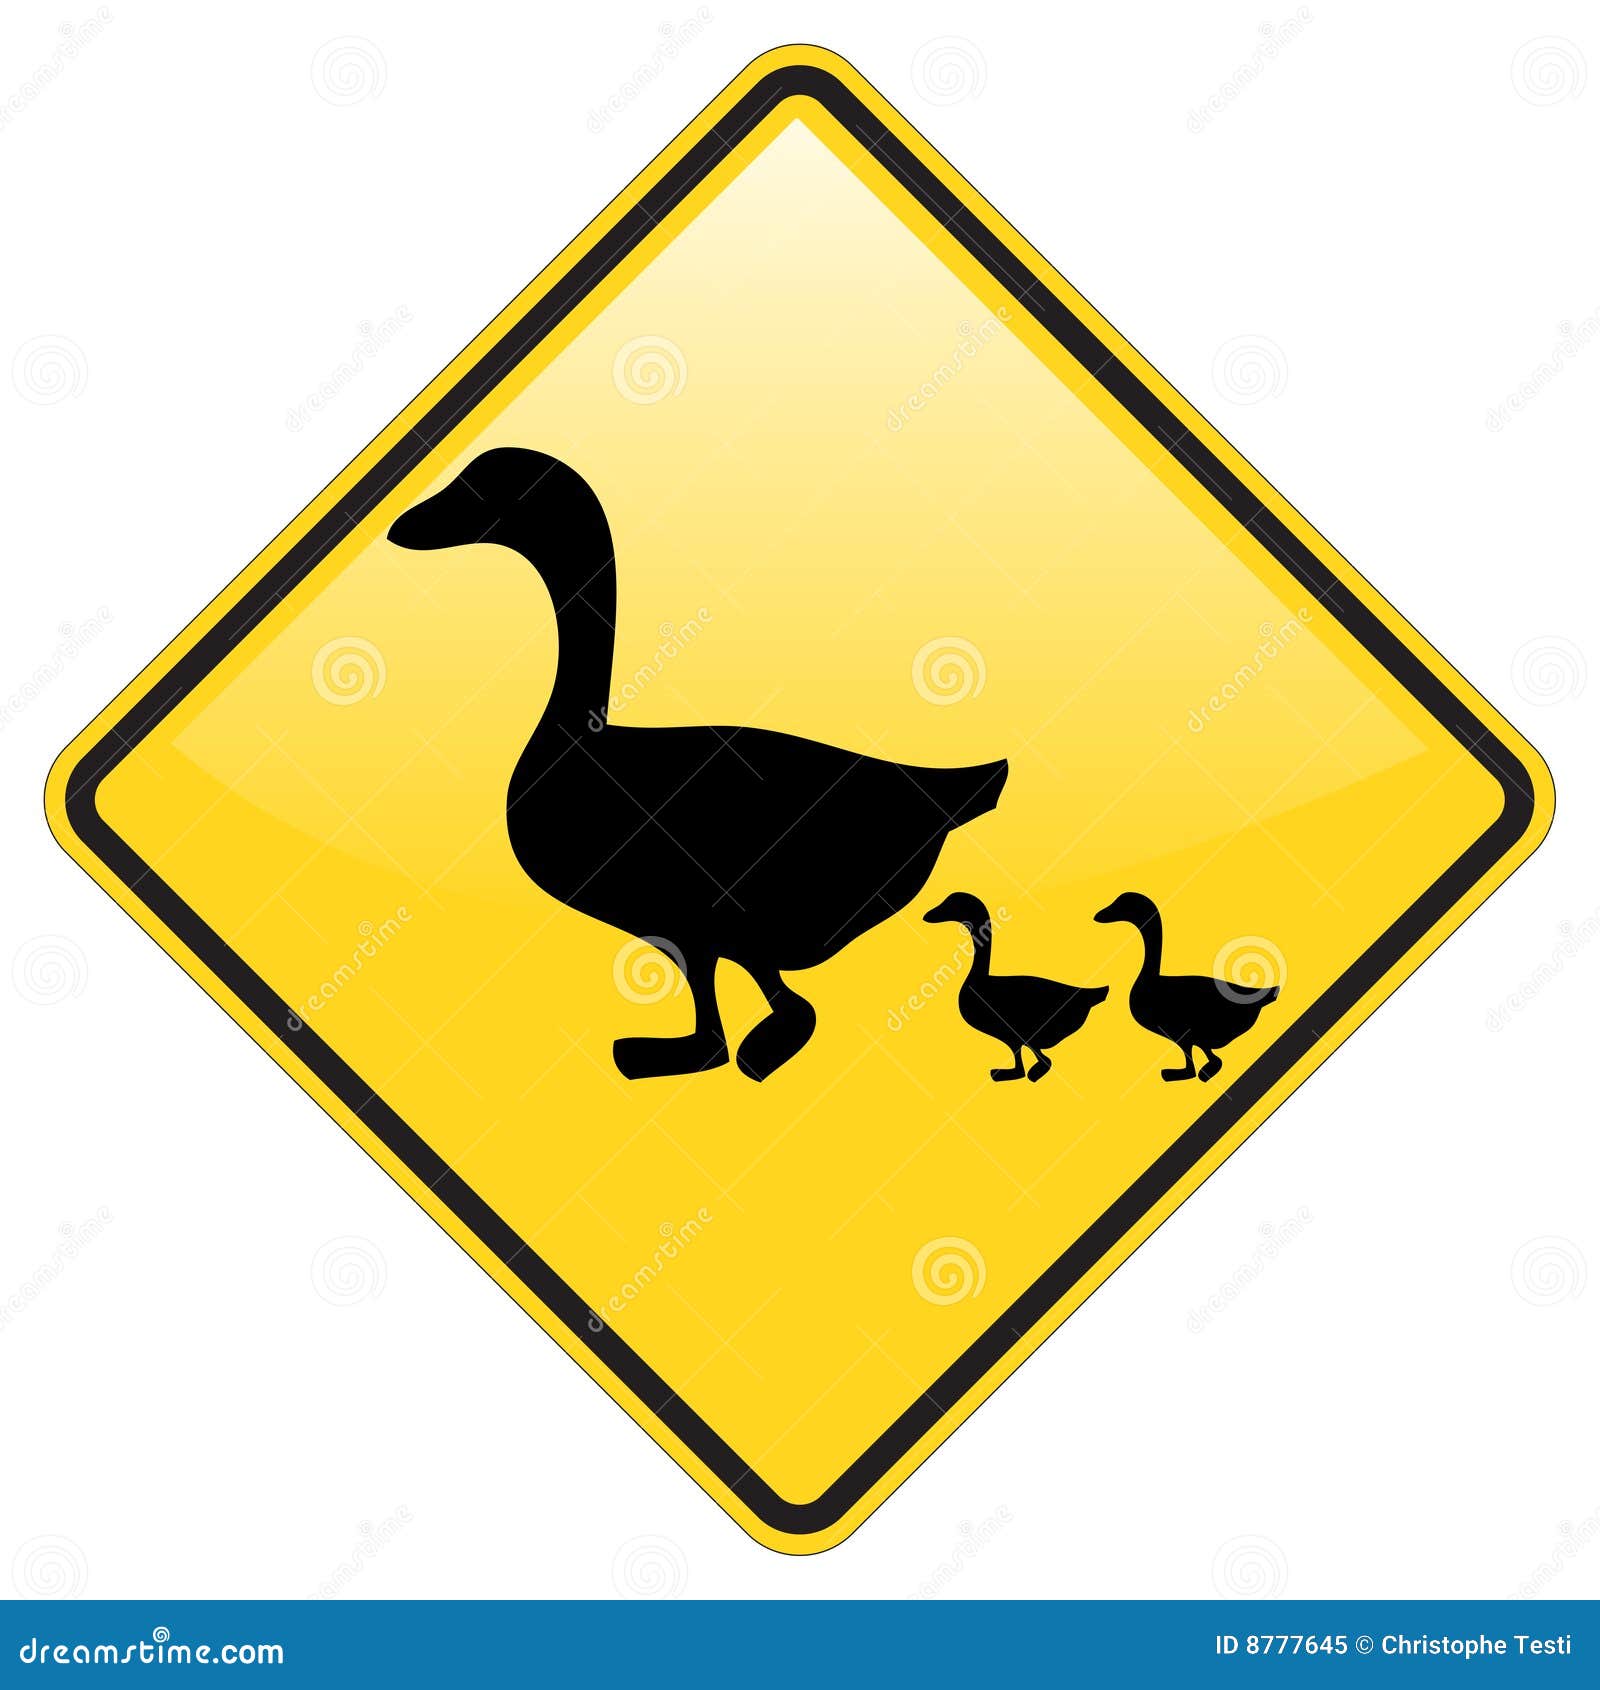 ducks-crossing-warning-8777645.jpg